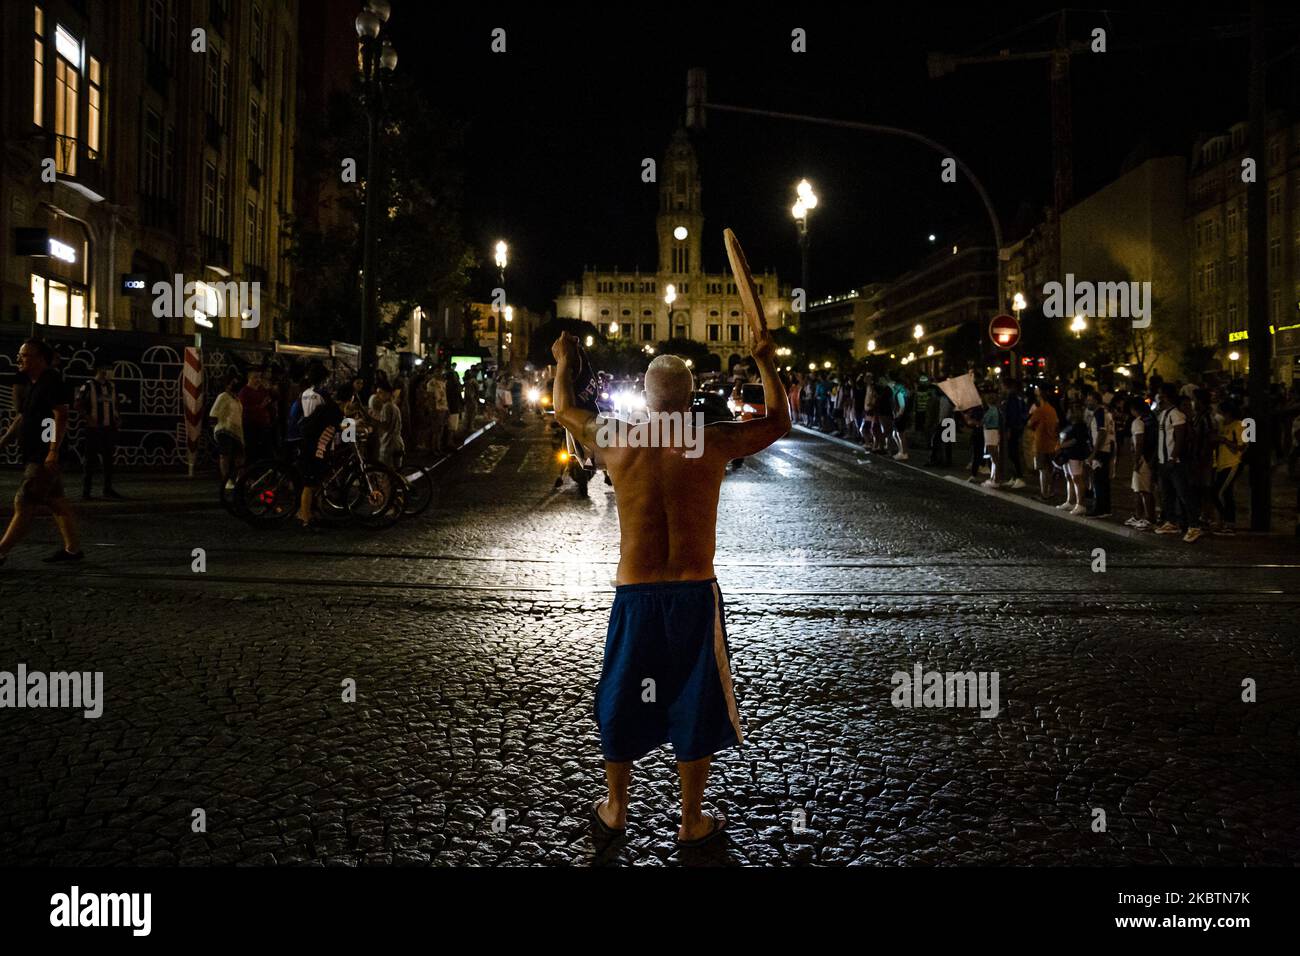 Supporters of FC Porto celebrate the win of Primeira Liga title, in Porto, Portugal, on July 16, 2020. (Photo by Rita Franca/NurPhoto) Stock Photo